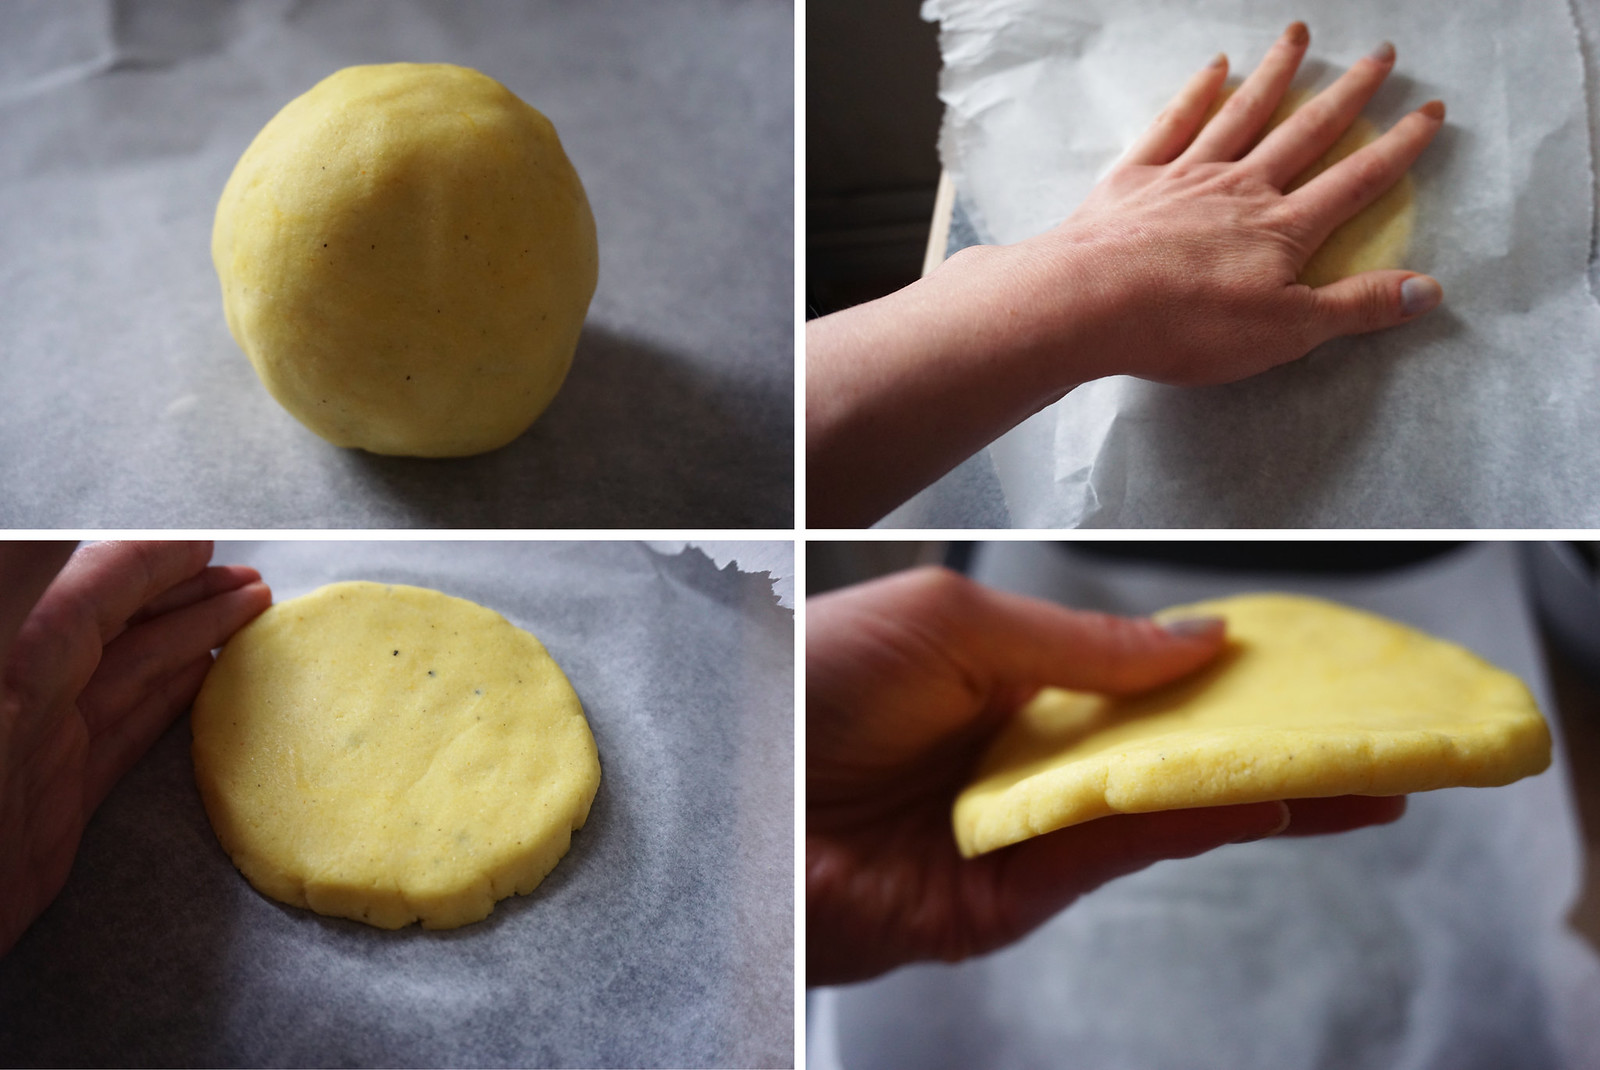 Gluten free arepas - arepas making process - arepas dough and patties